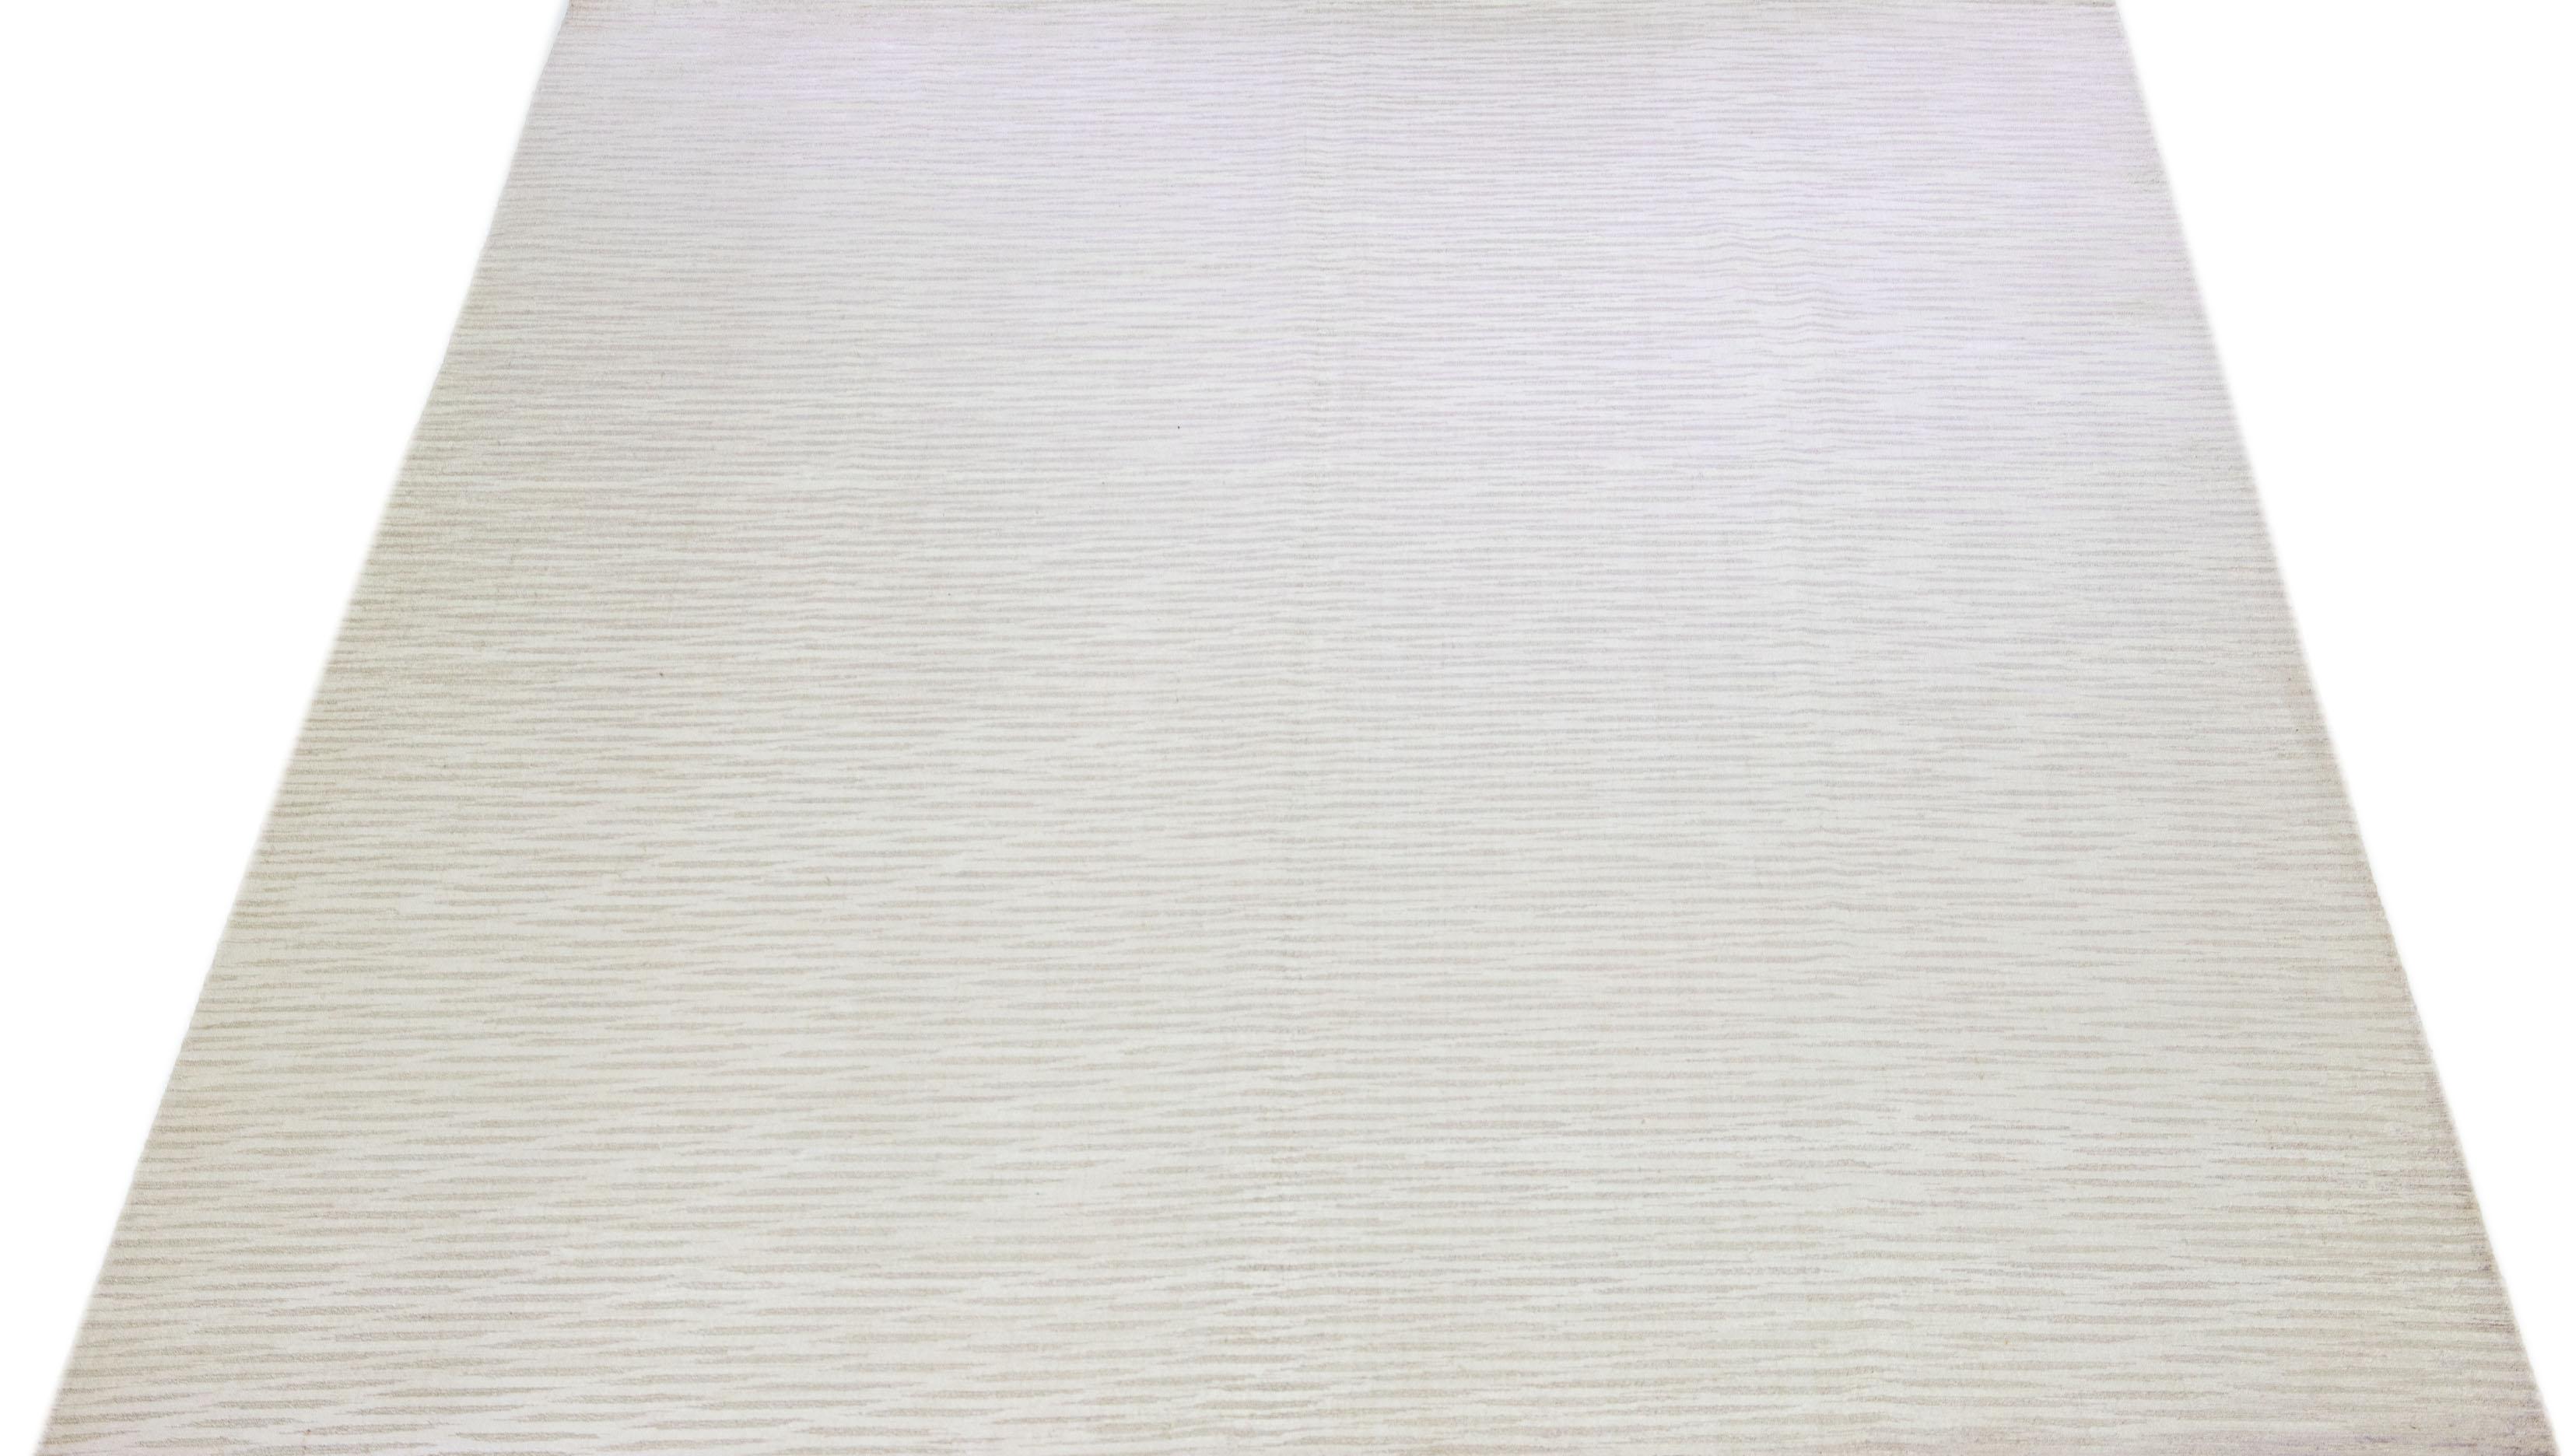 Cet exquis tapis contemporain en laine et soie présente une base gris-argent frappante ornée d'un étonnant motif géométrique qui s'étend gracieusement d'un bout à l'autre.

Ce tapis mesure 10' x 13'9